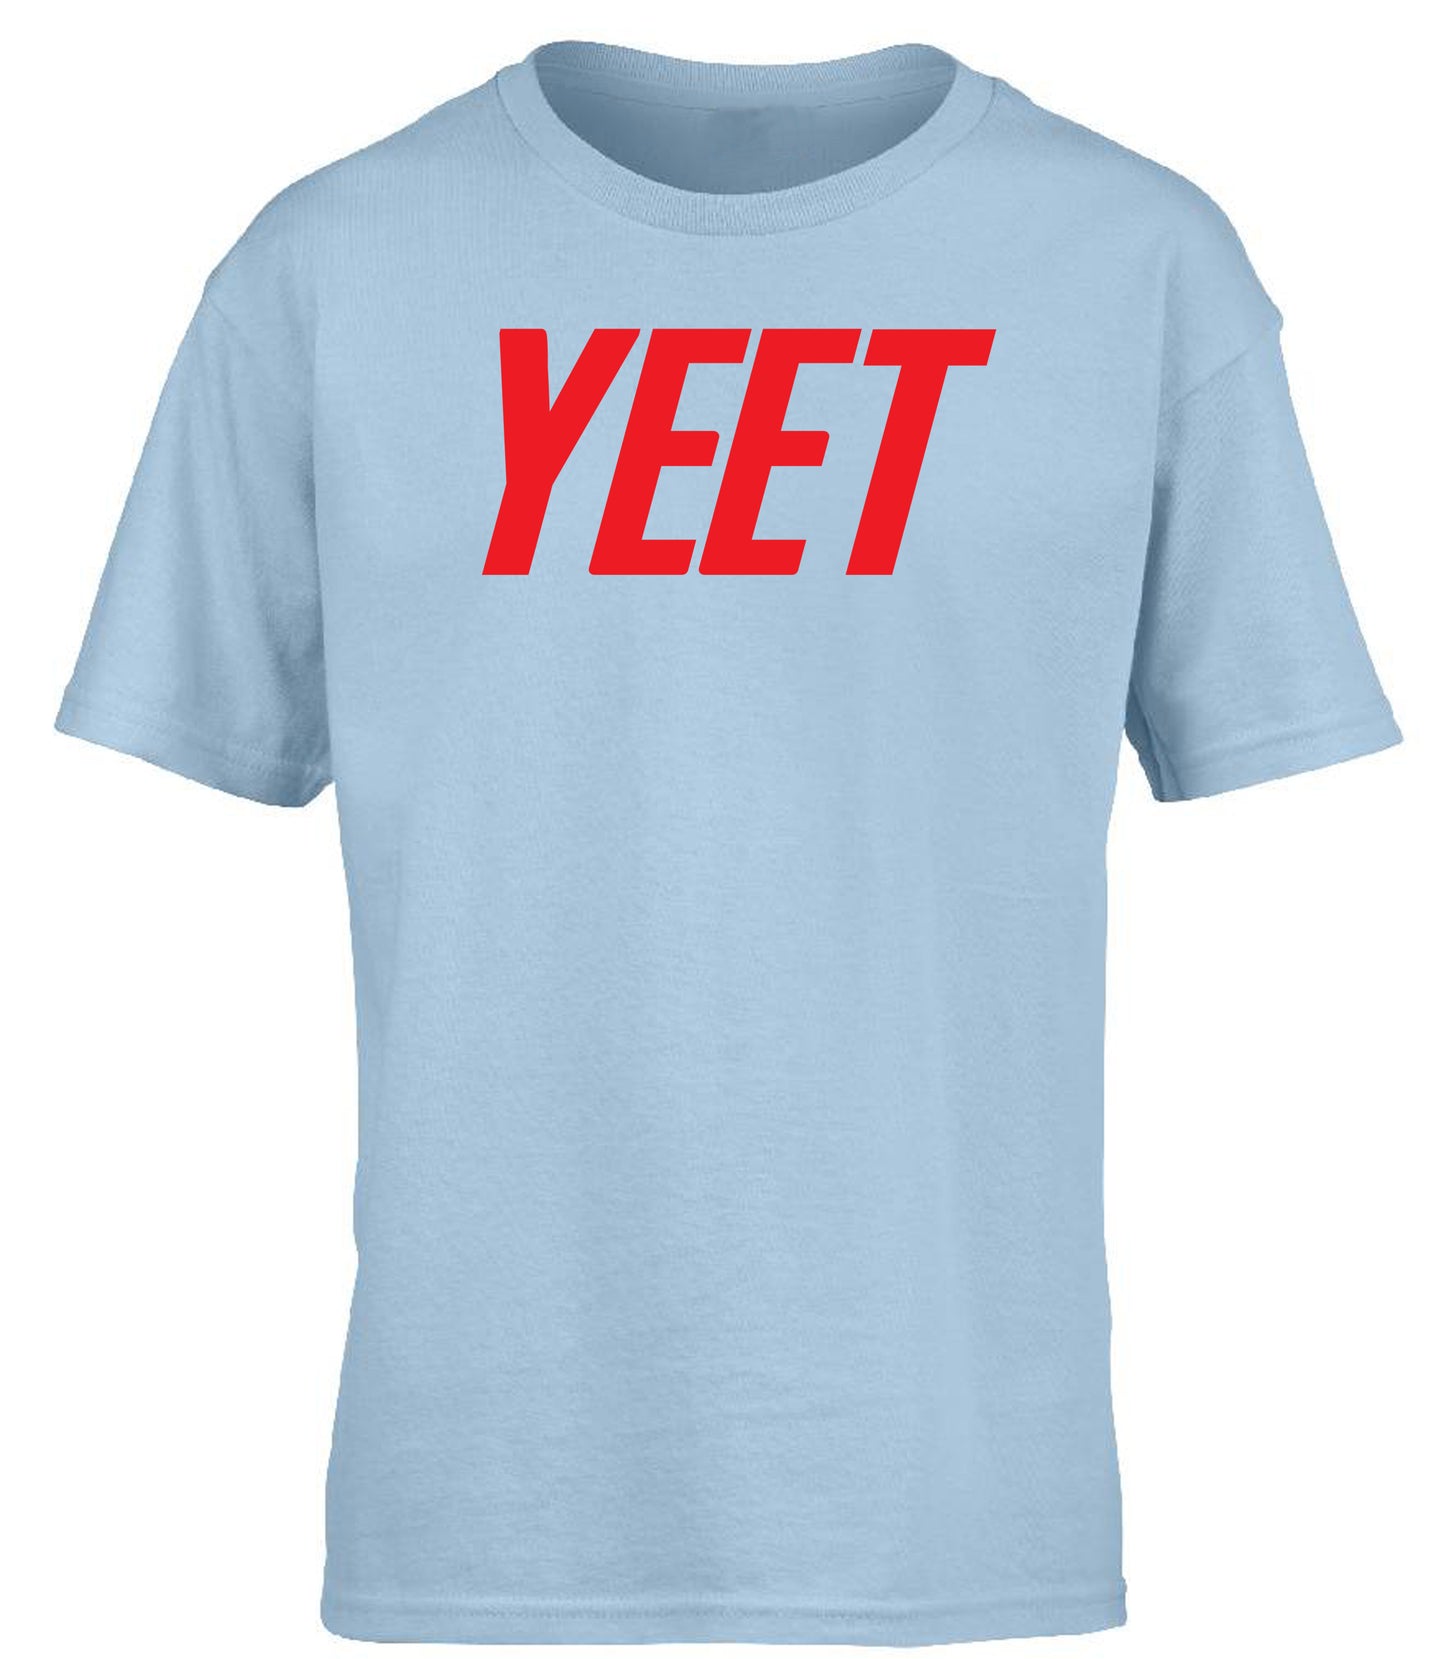 Yeet children's T-shirt